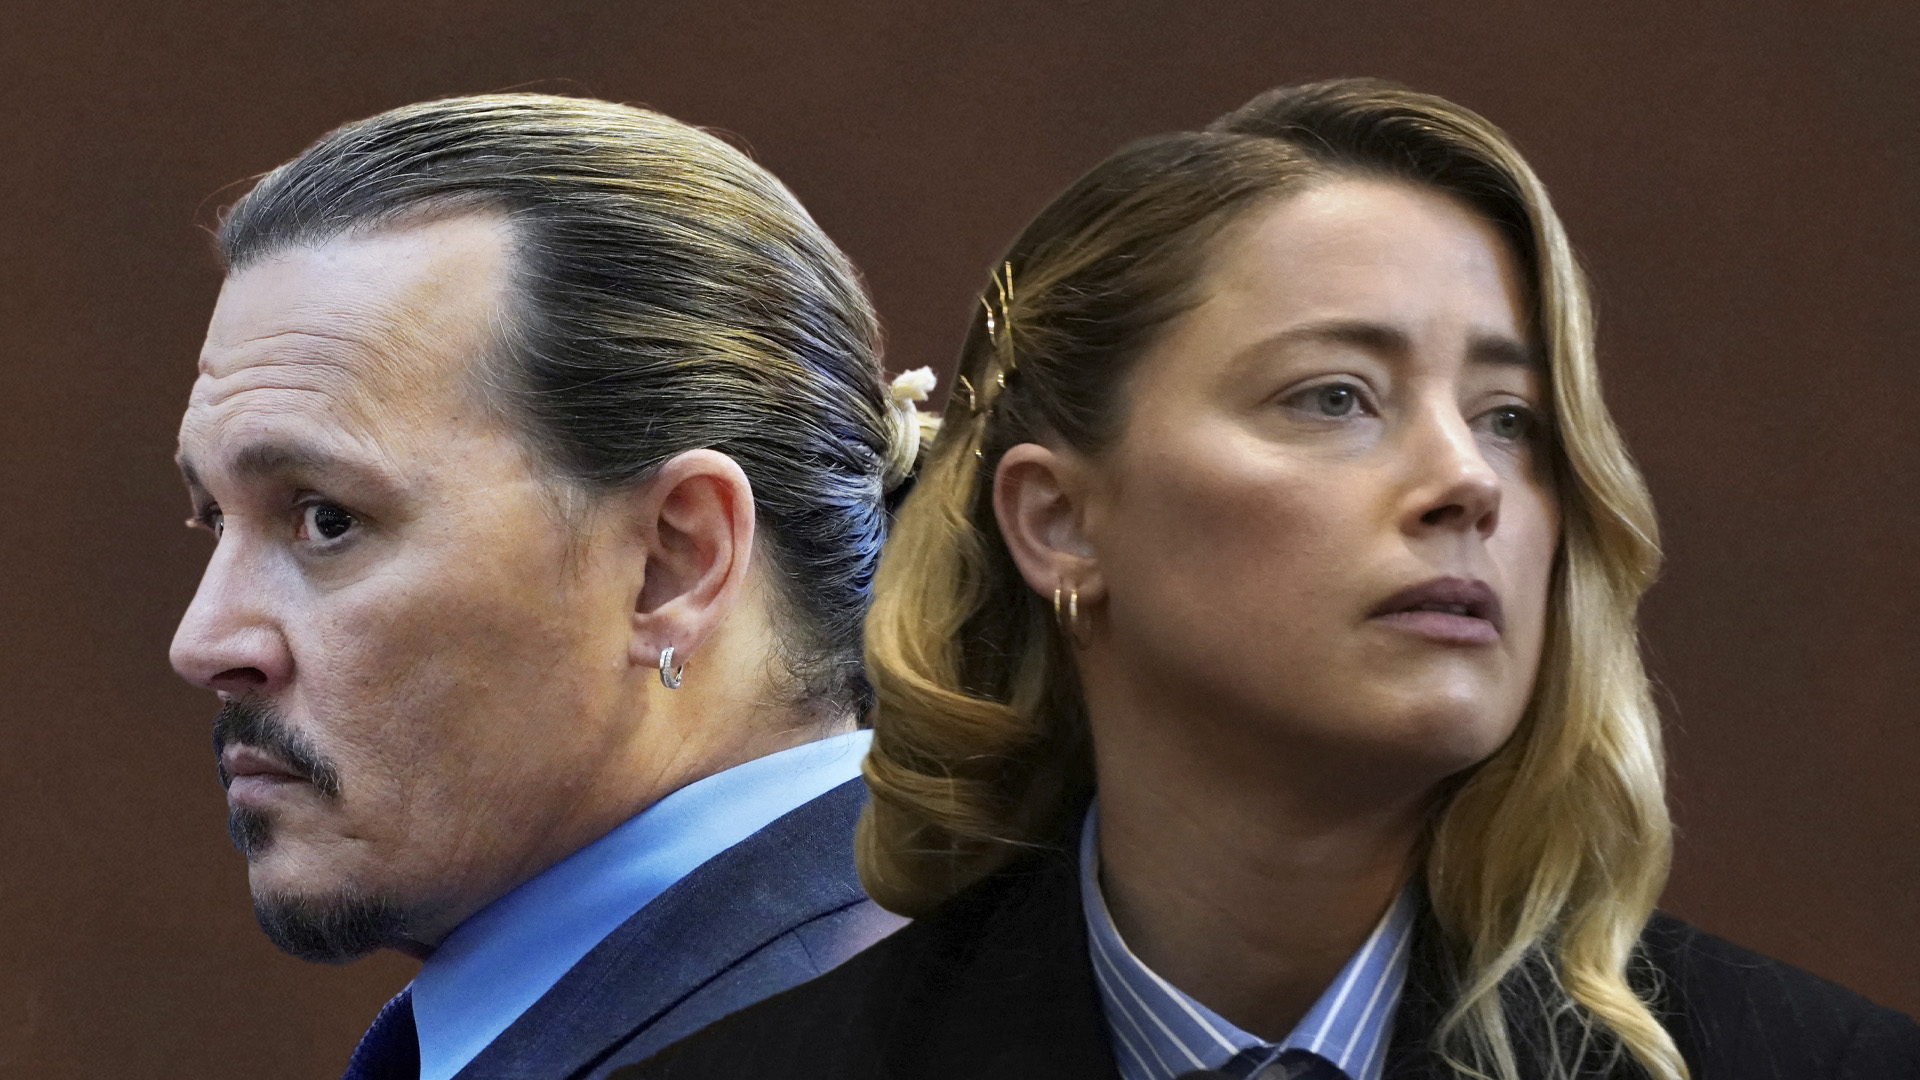 El juicio entre Amber Heard y Johnny Depp concluyó (Foto: Archivo)